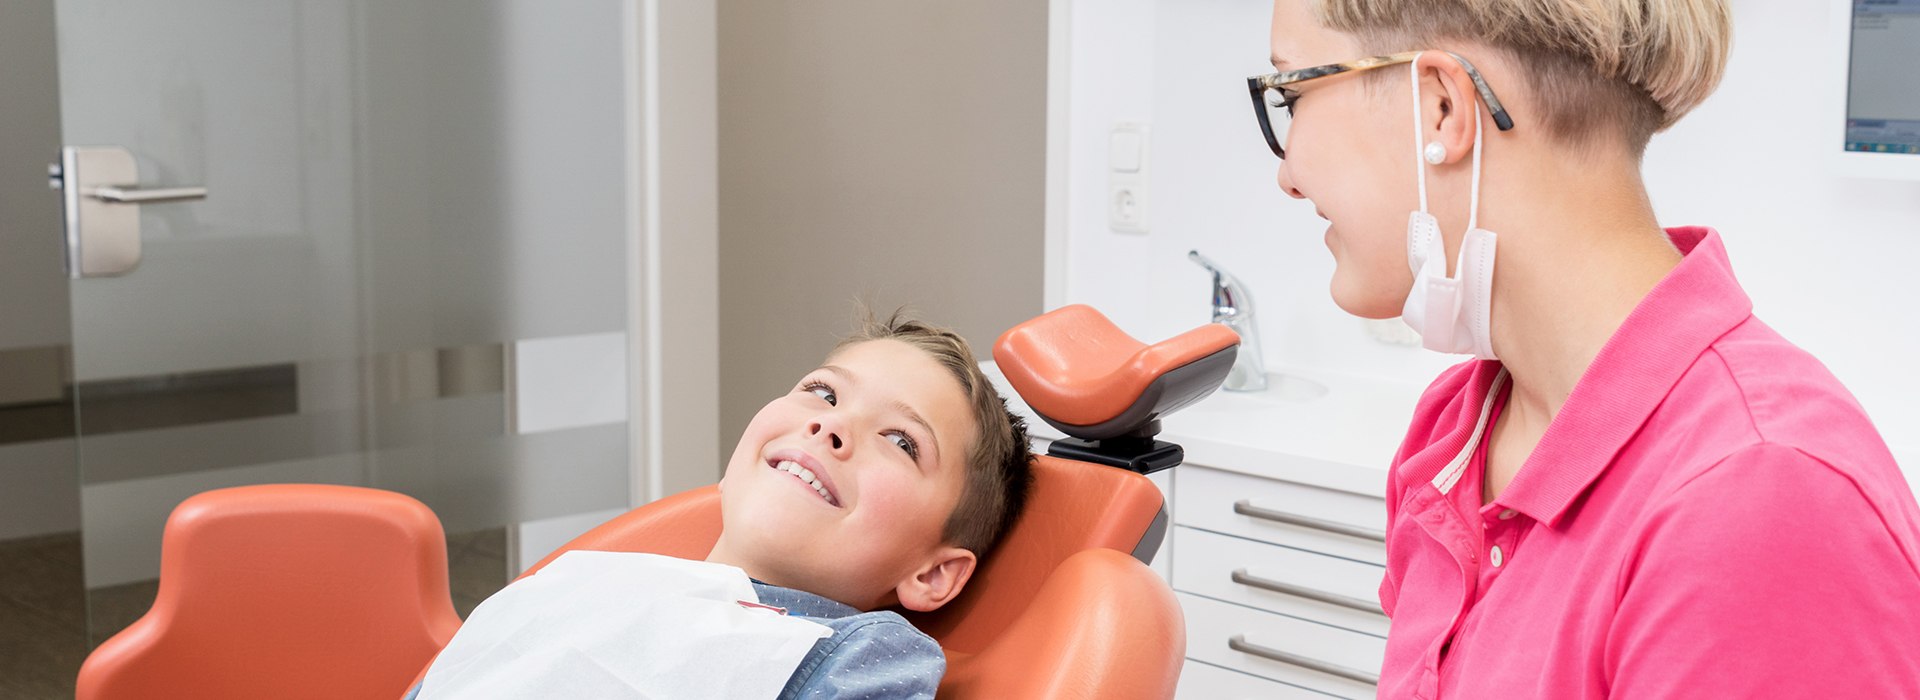 Bright Smile Dental Care, LTD | Dental Fillings, Dental Bridges and Dermal Fillers